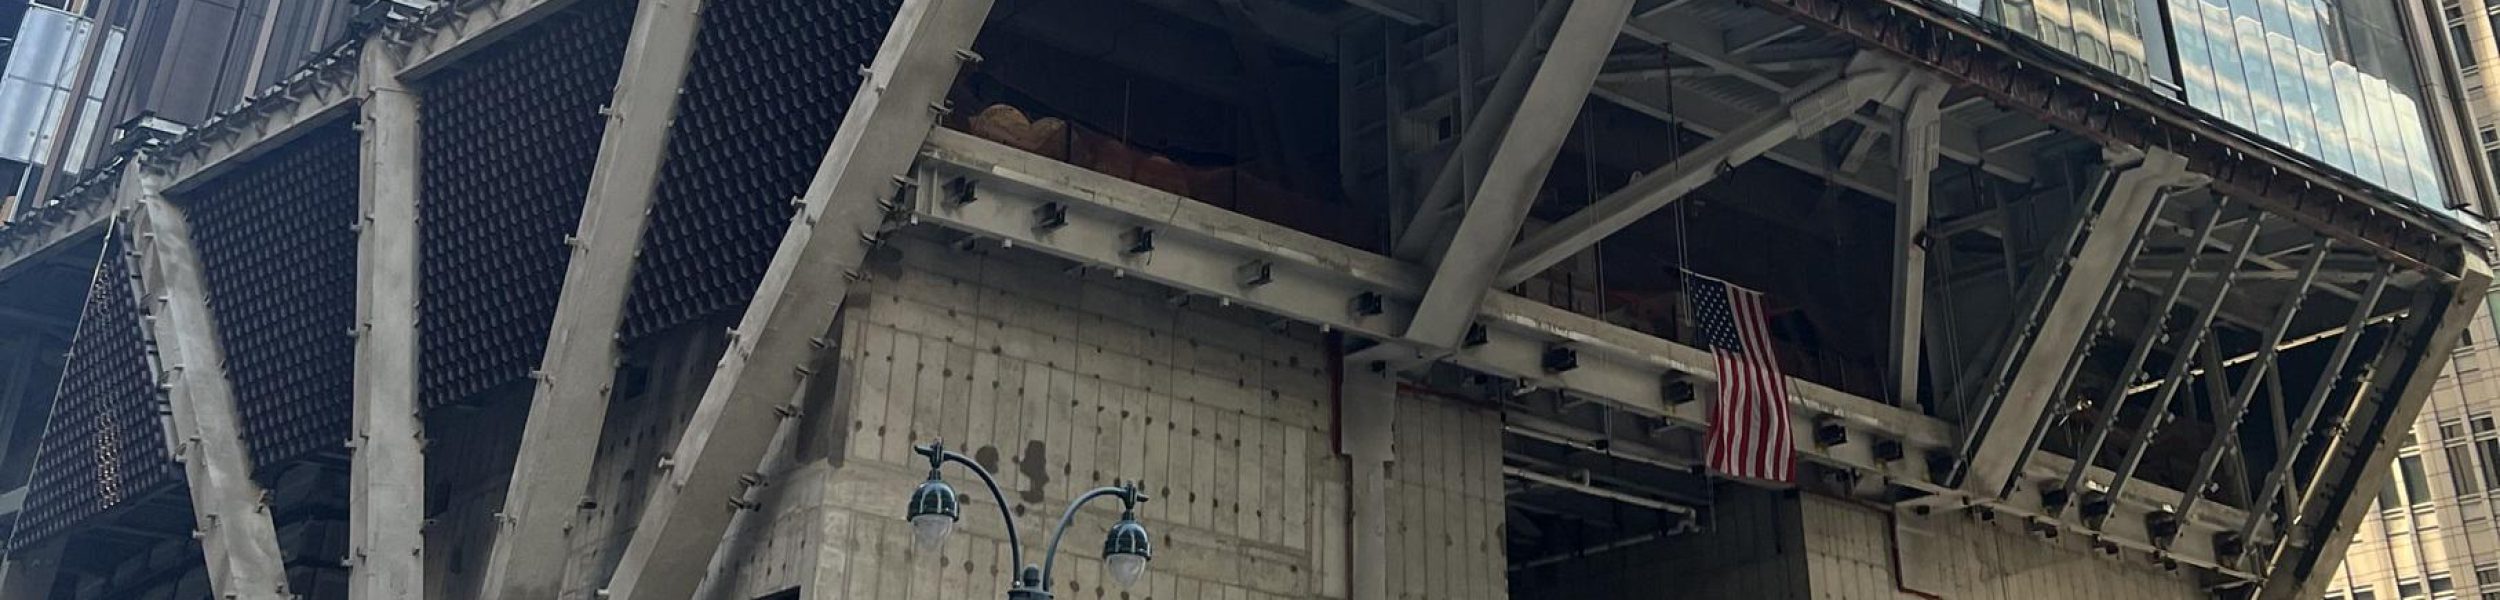 הקונסטרוקציה לפני עבודות הגמר במגדל של ג'יי פי מורגן שנבנה בניו יורק (צילום: מערכת חדשות מרכז הבנייה הישראלי)